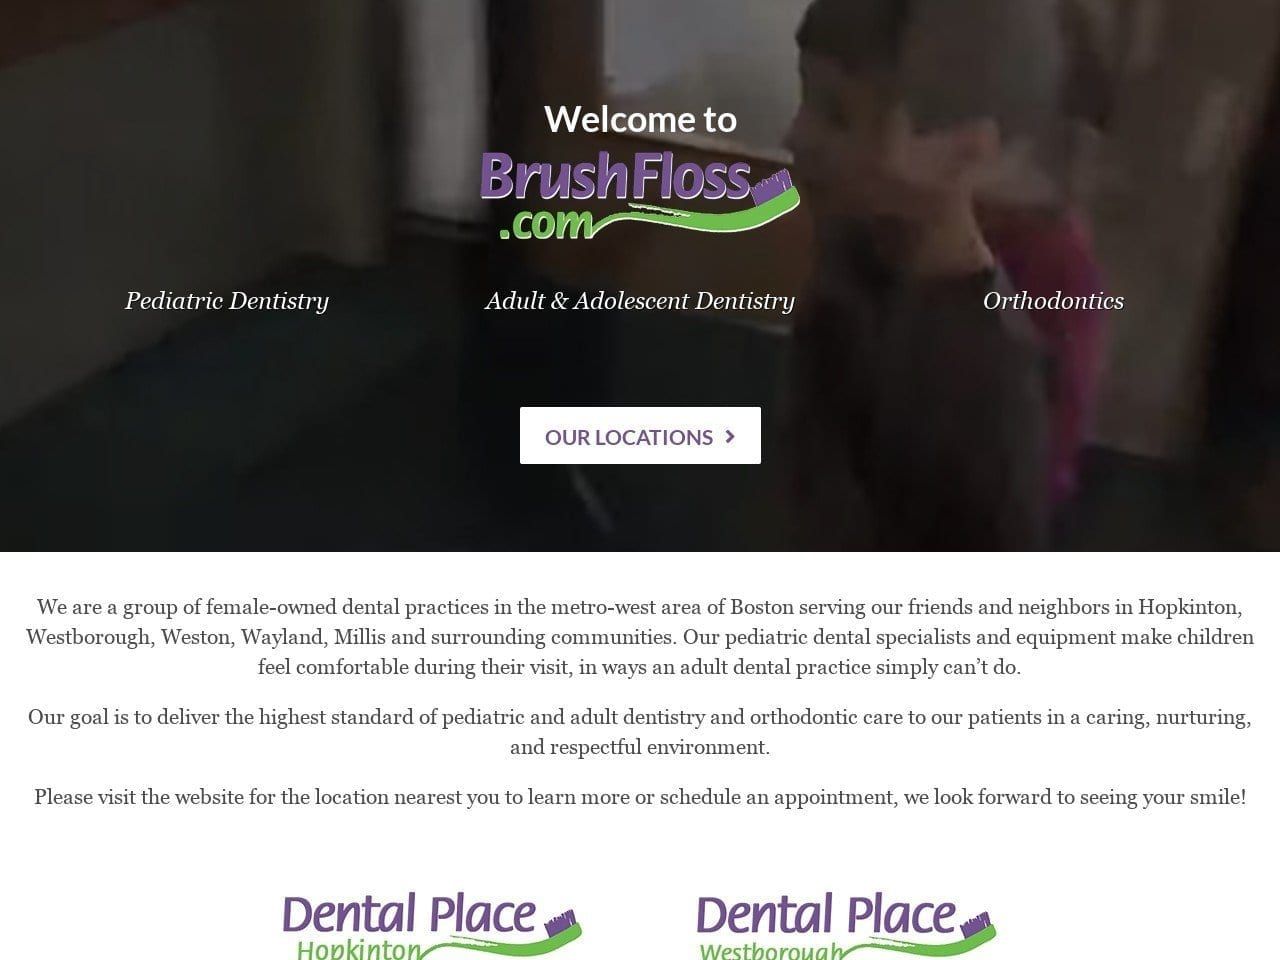 Dental Place Antun Reem R DDS Website Screenshot from brushfloss.com